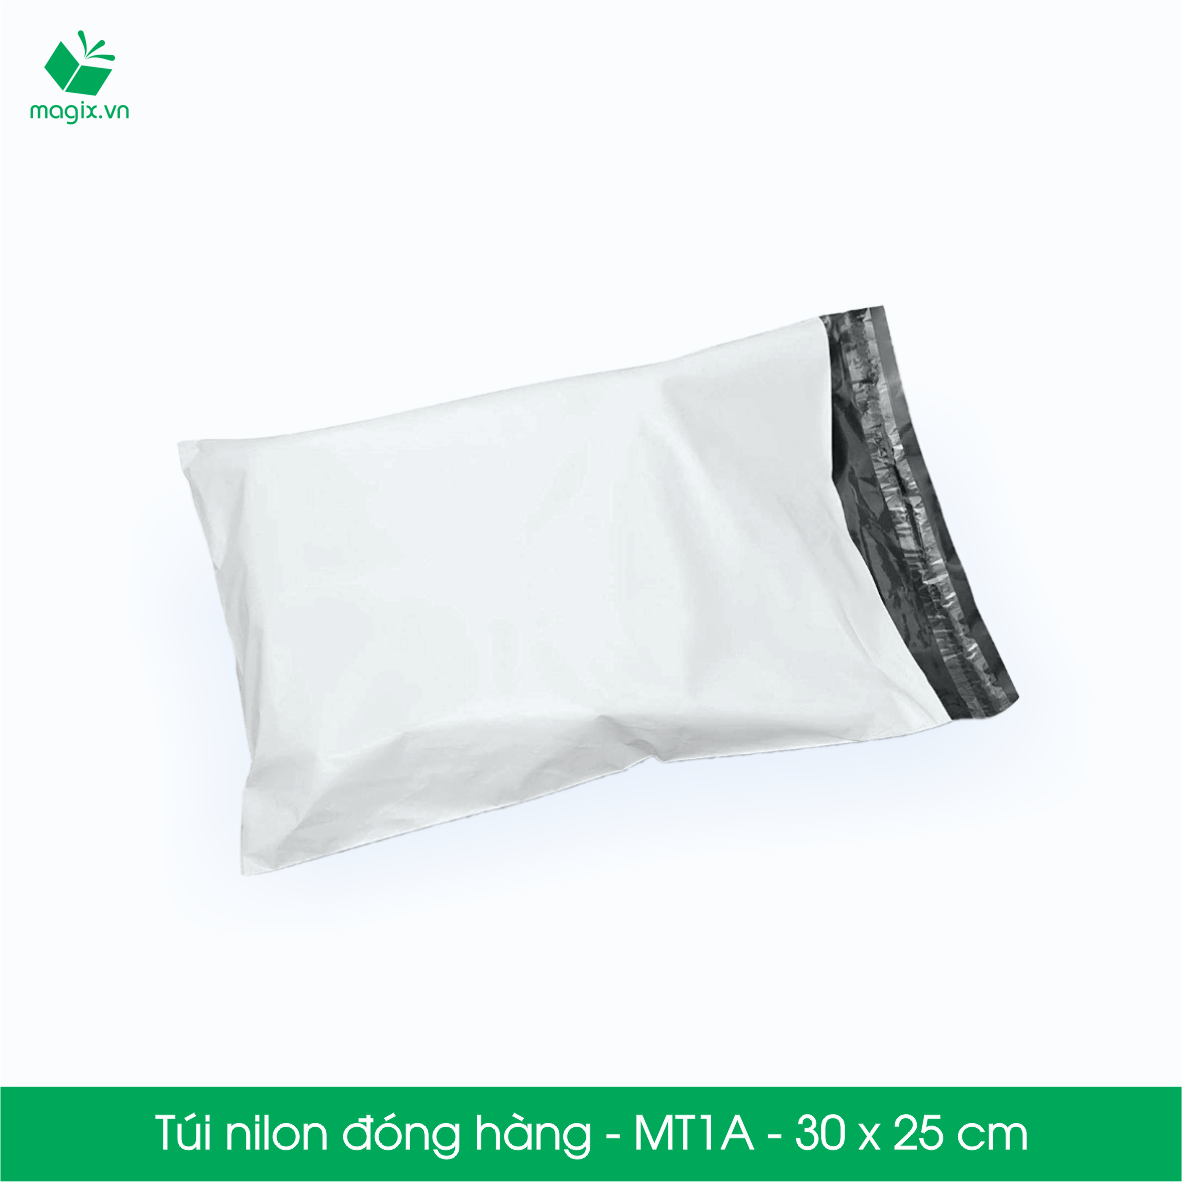 MT1A - 30x25 cm - 200 túi nilon 2 lớp đóng hàng thay thùng hộp carton